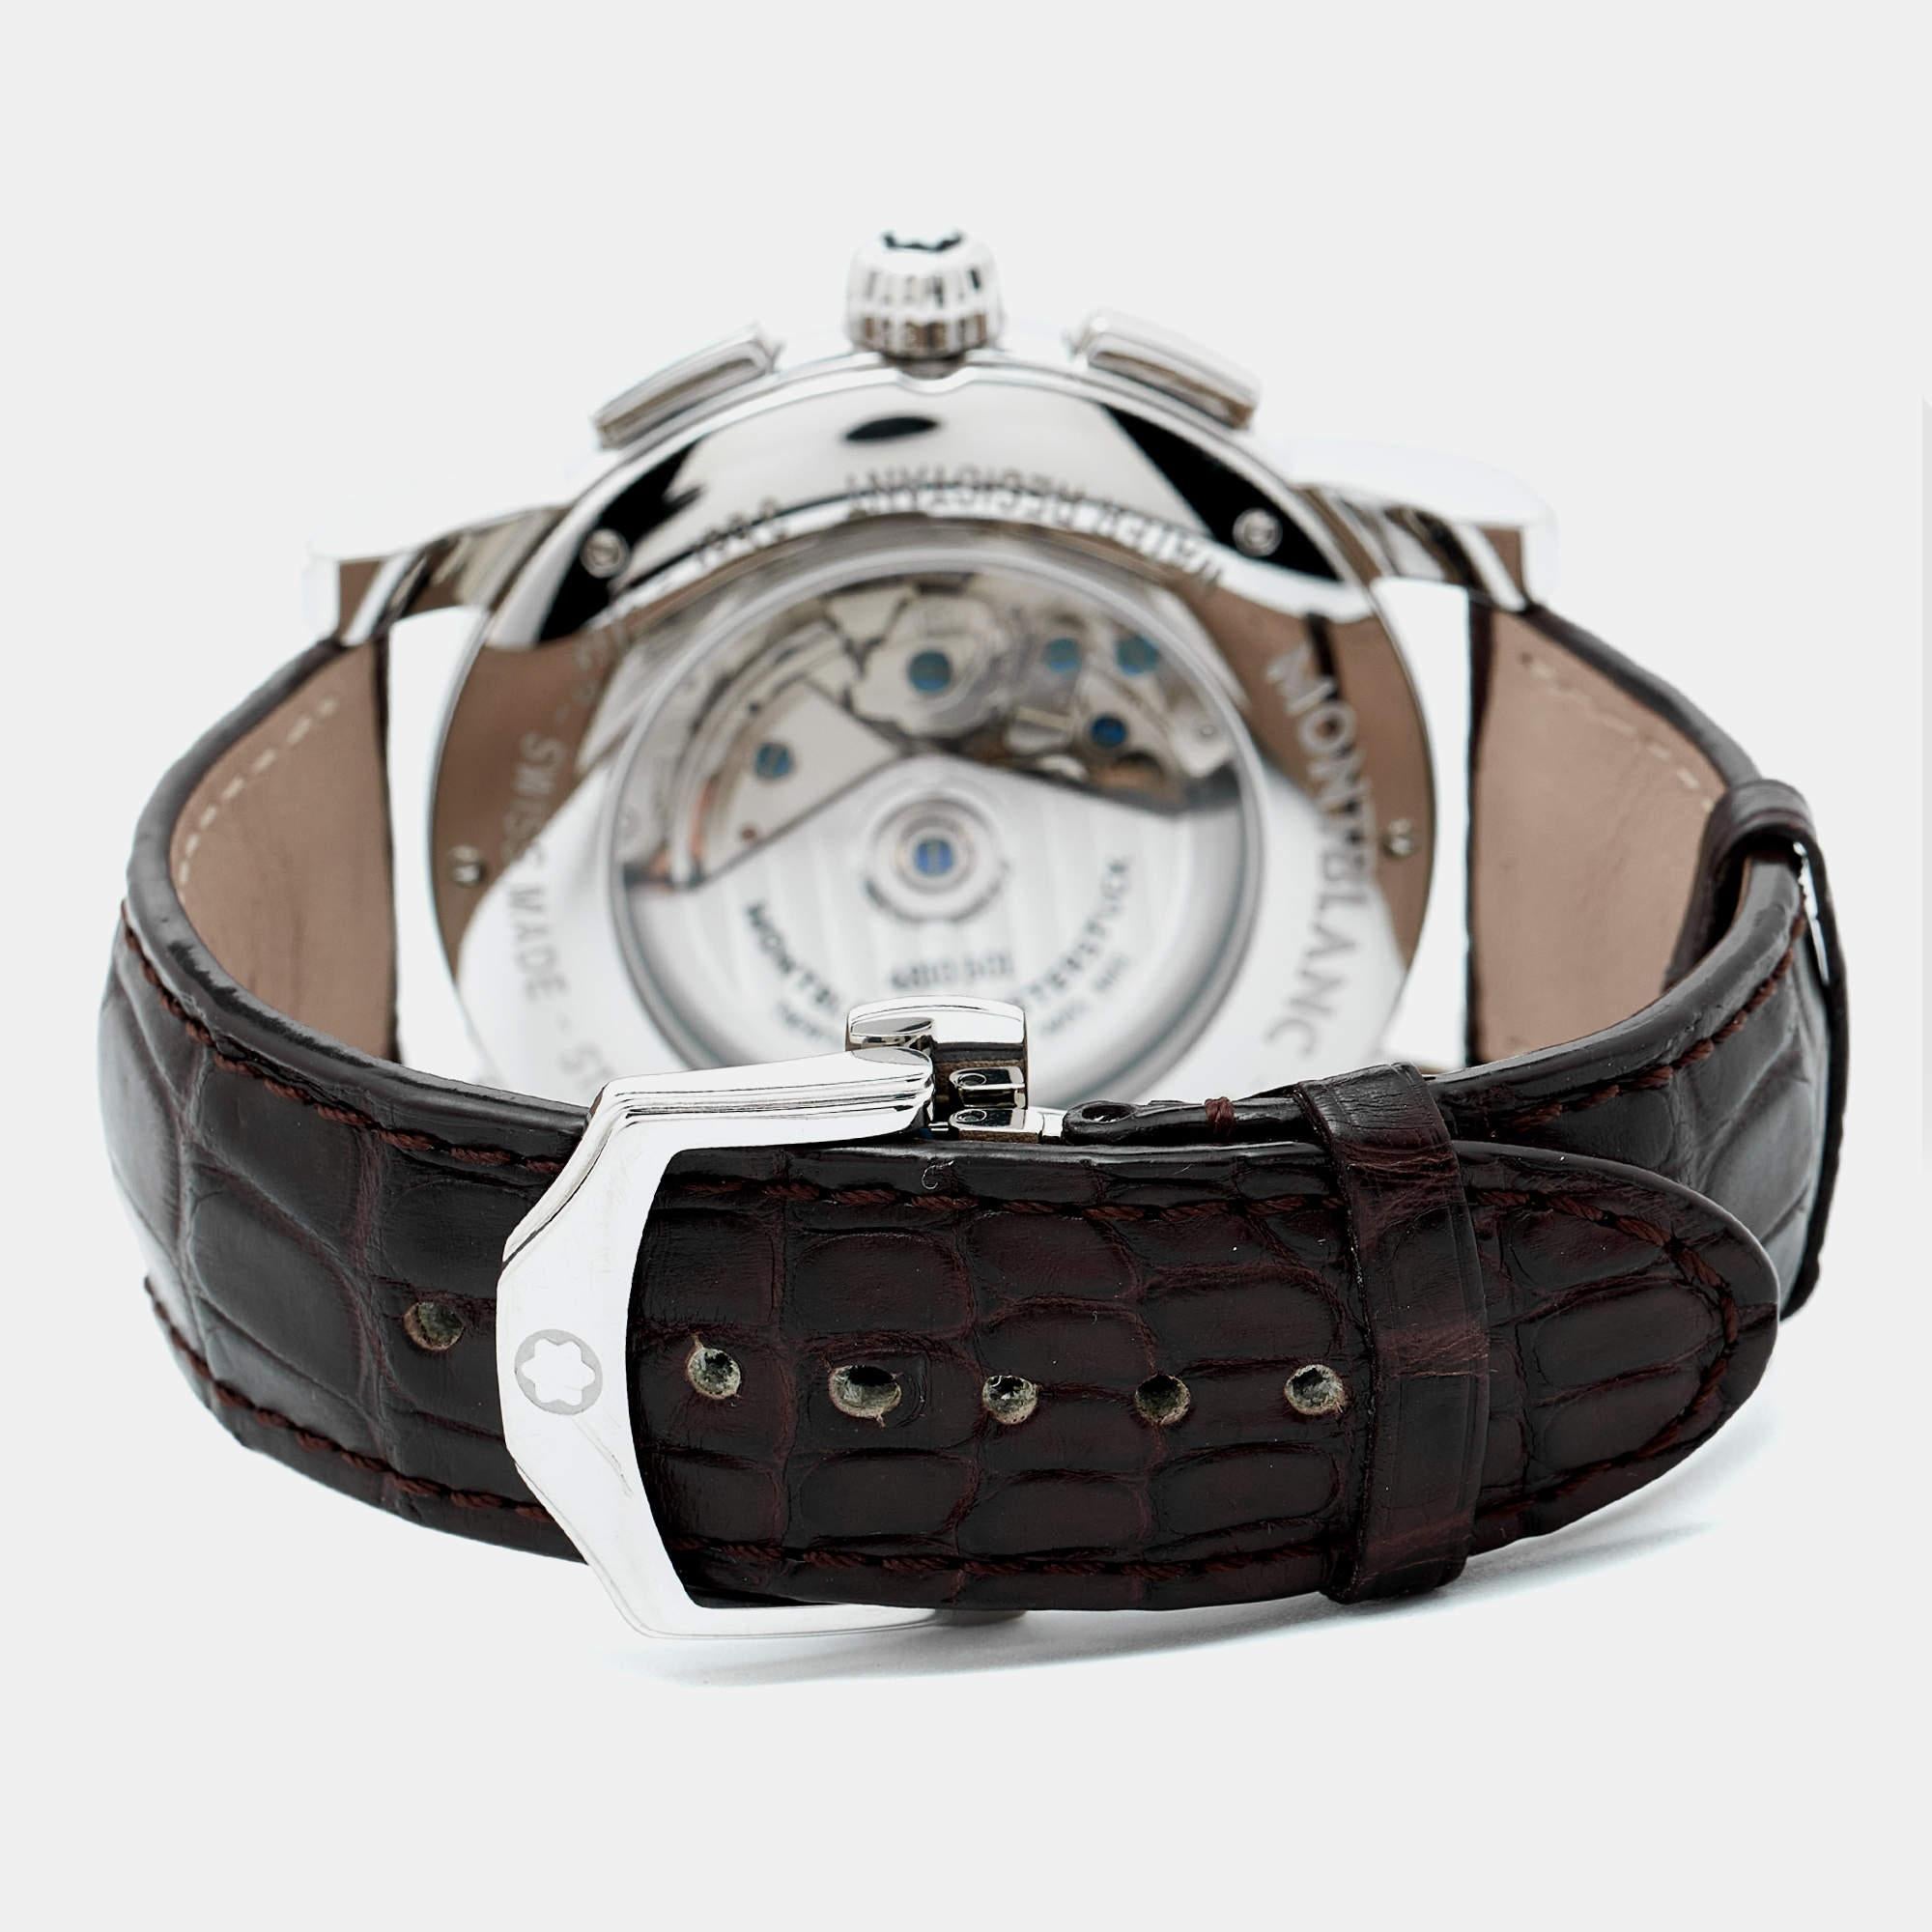 Cette montre pour homme Star 7104 Automatic de Montblanc, fabriquée en acier inoxydable, présente un aspect classique. La montre présente un cadran argenté guilloché avec des index distincts et trois cadrans auxiliaires, une lunette lisse et un fond